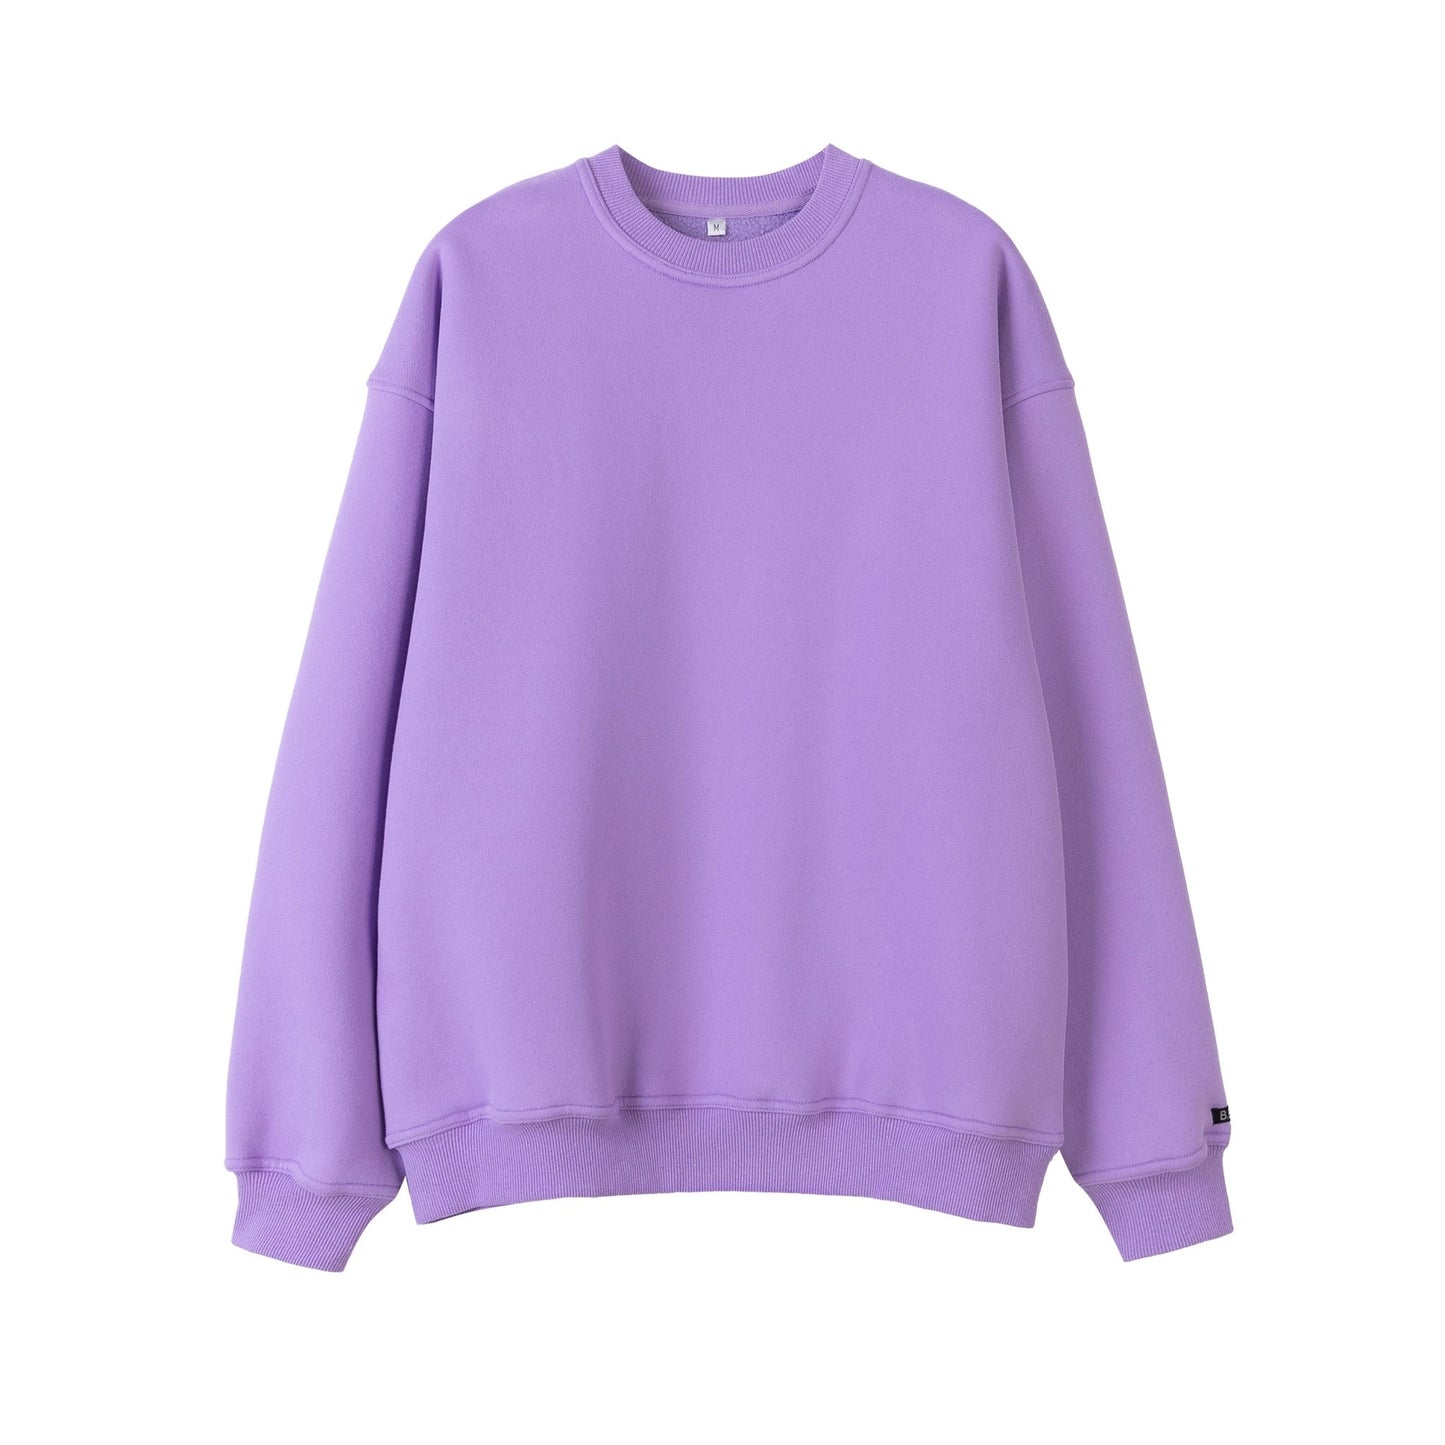 So Soft Sweater - Bright Purple